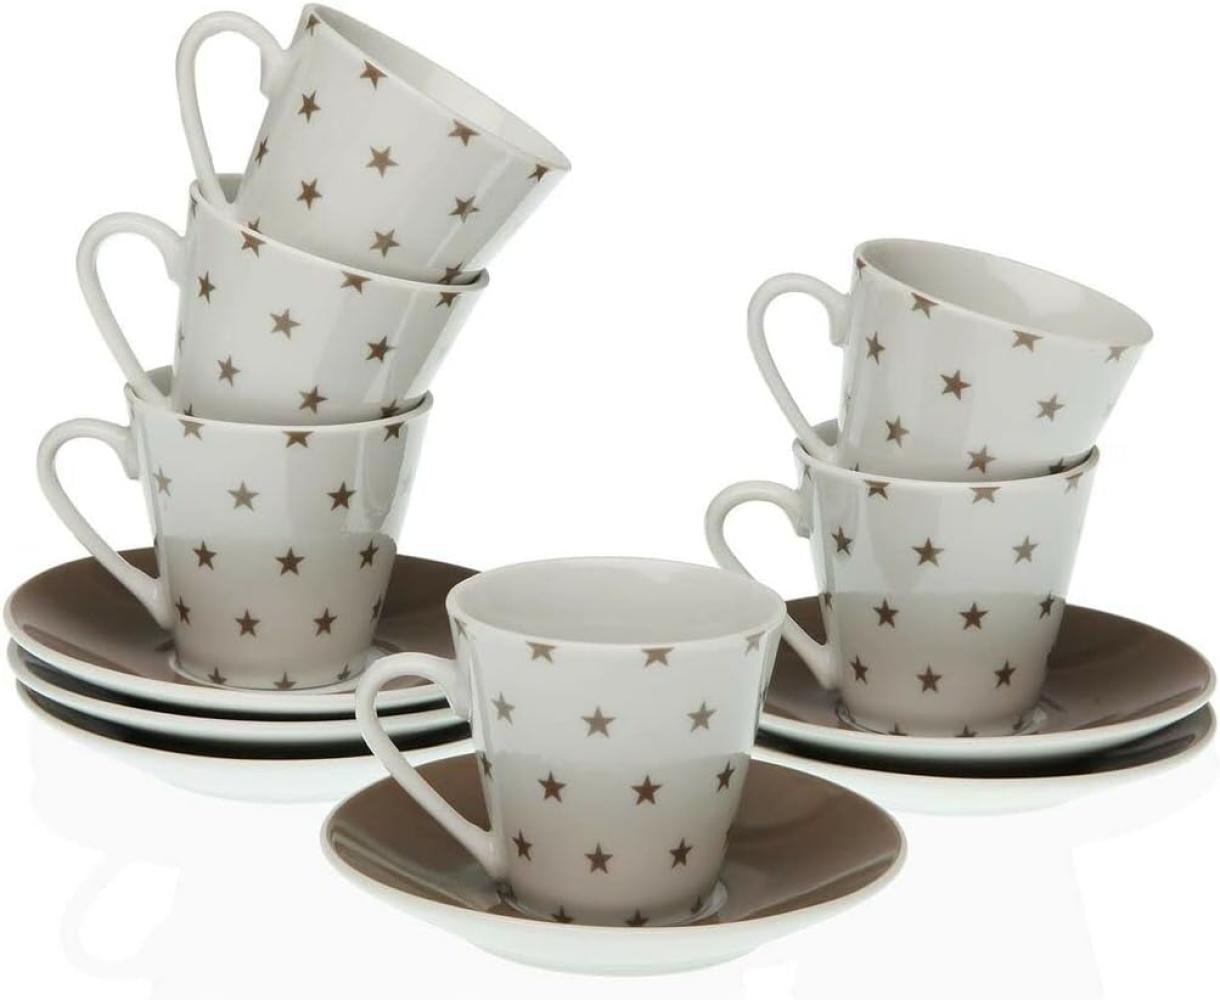 Satz mit Tassen- und Tellern Versa Porzellan Sterne Kaffee (12 Stücke) Bild 1